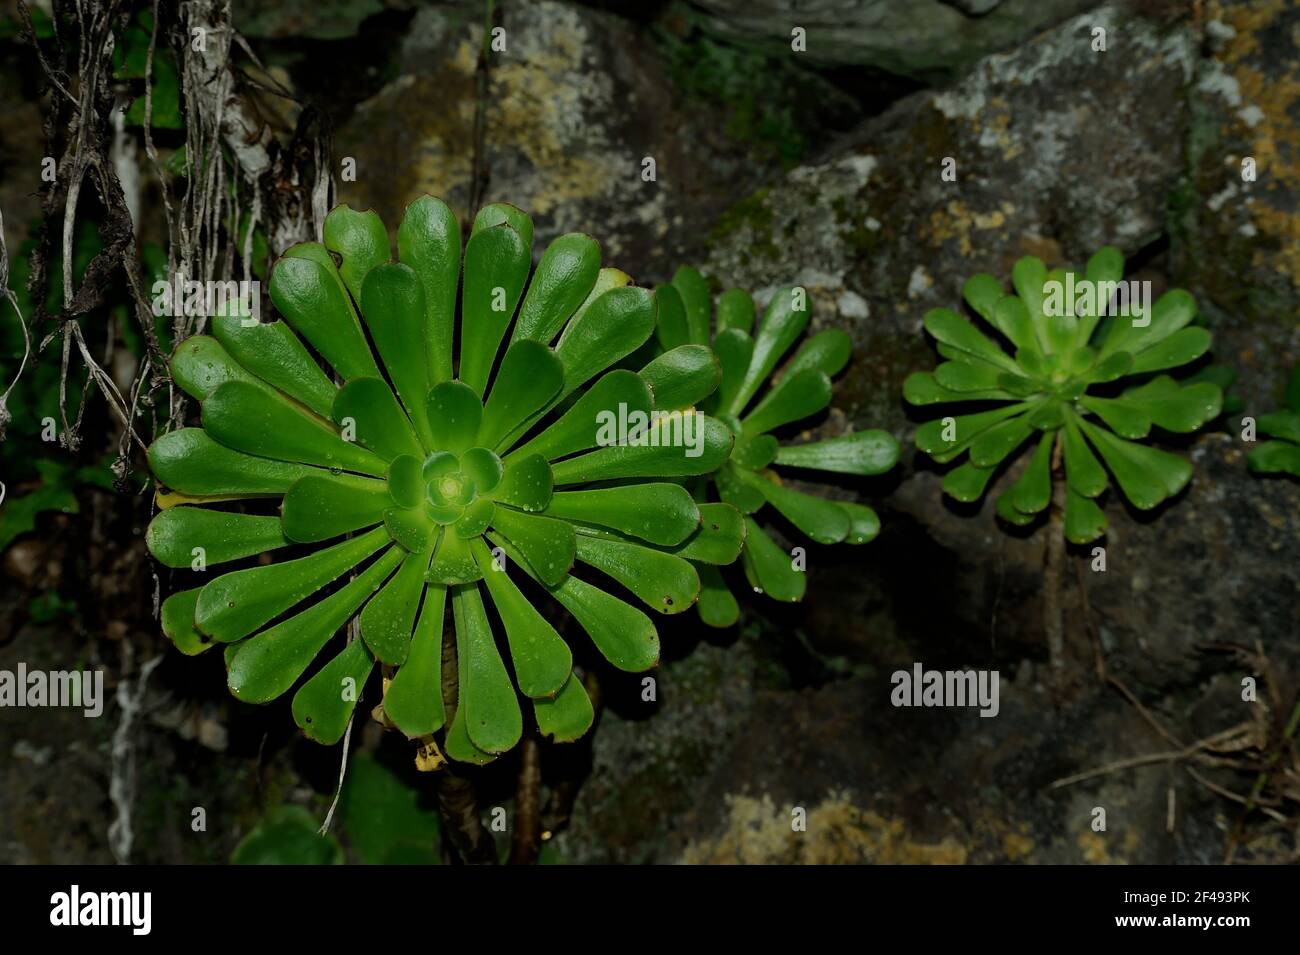 Aeonium undulatum (plante soucoupe) plantes sauvages sur le substrat rocheux. Banque D'Images